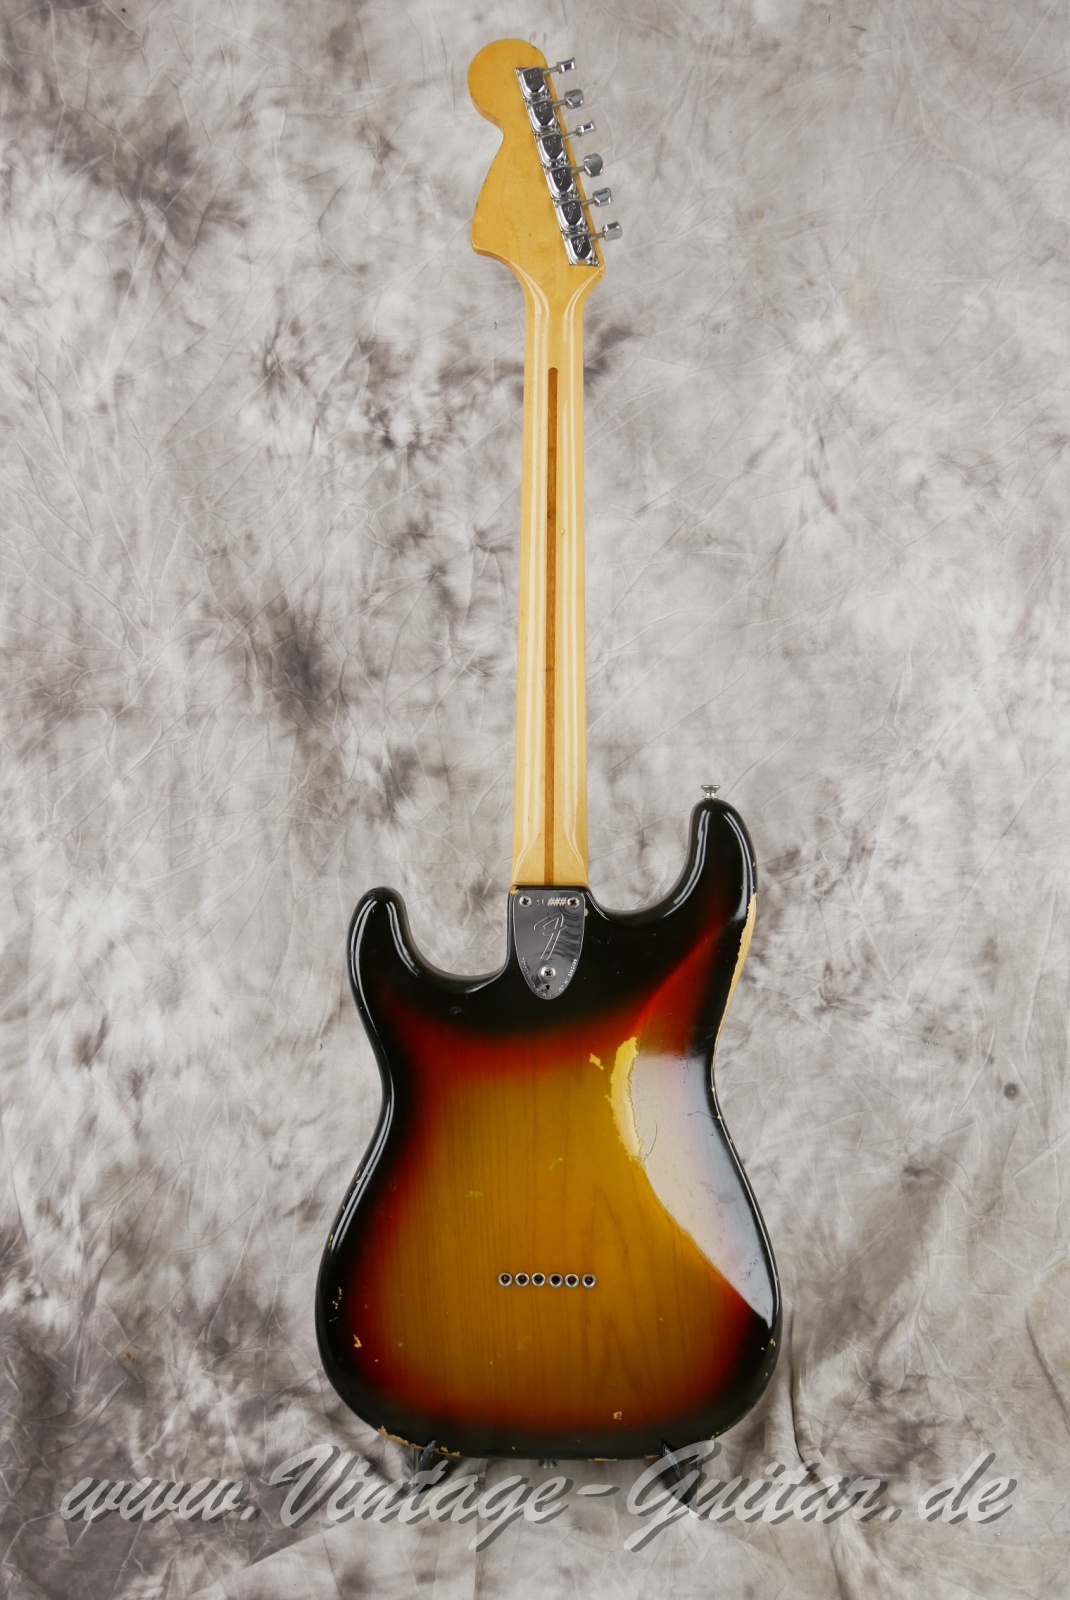 Fender-Stratocaster-Hardtail-1974c.-sunburst-002.jpg